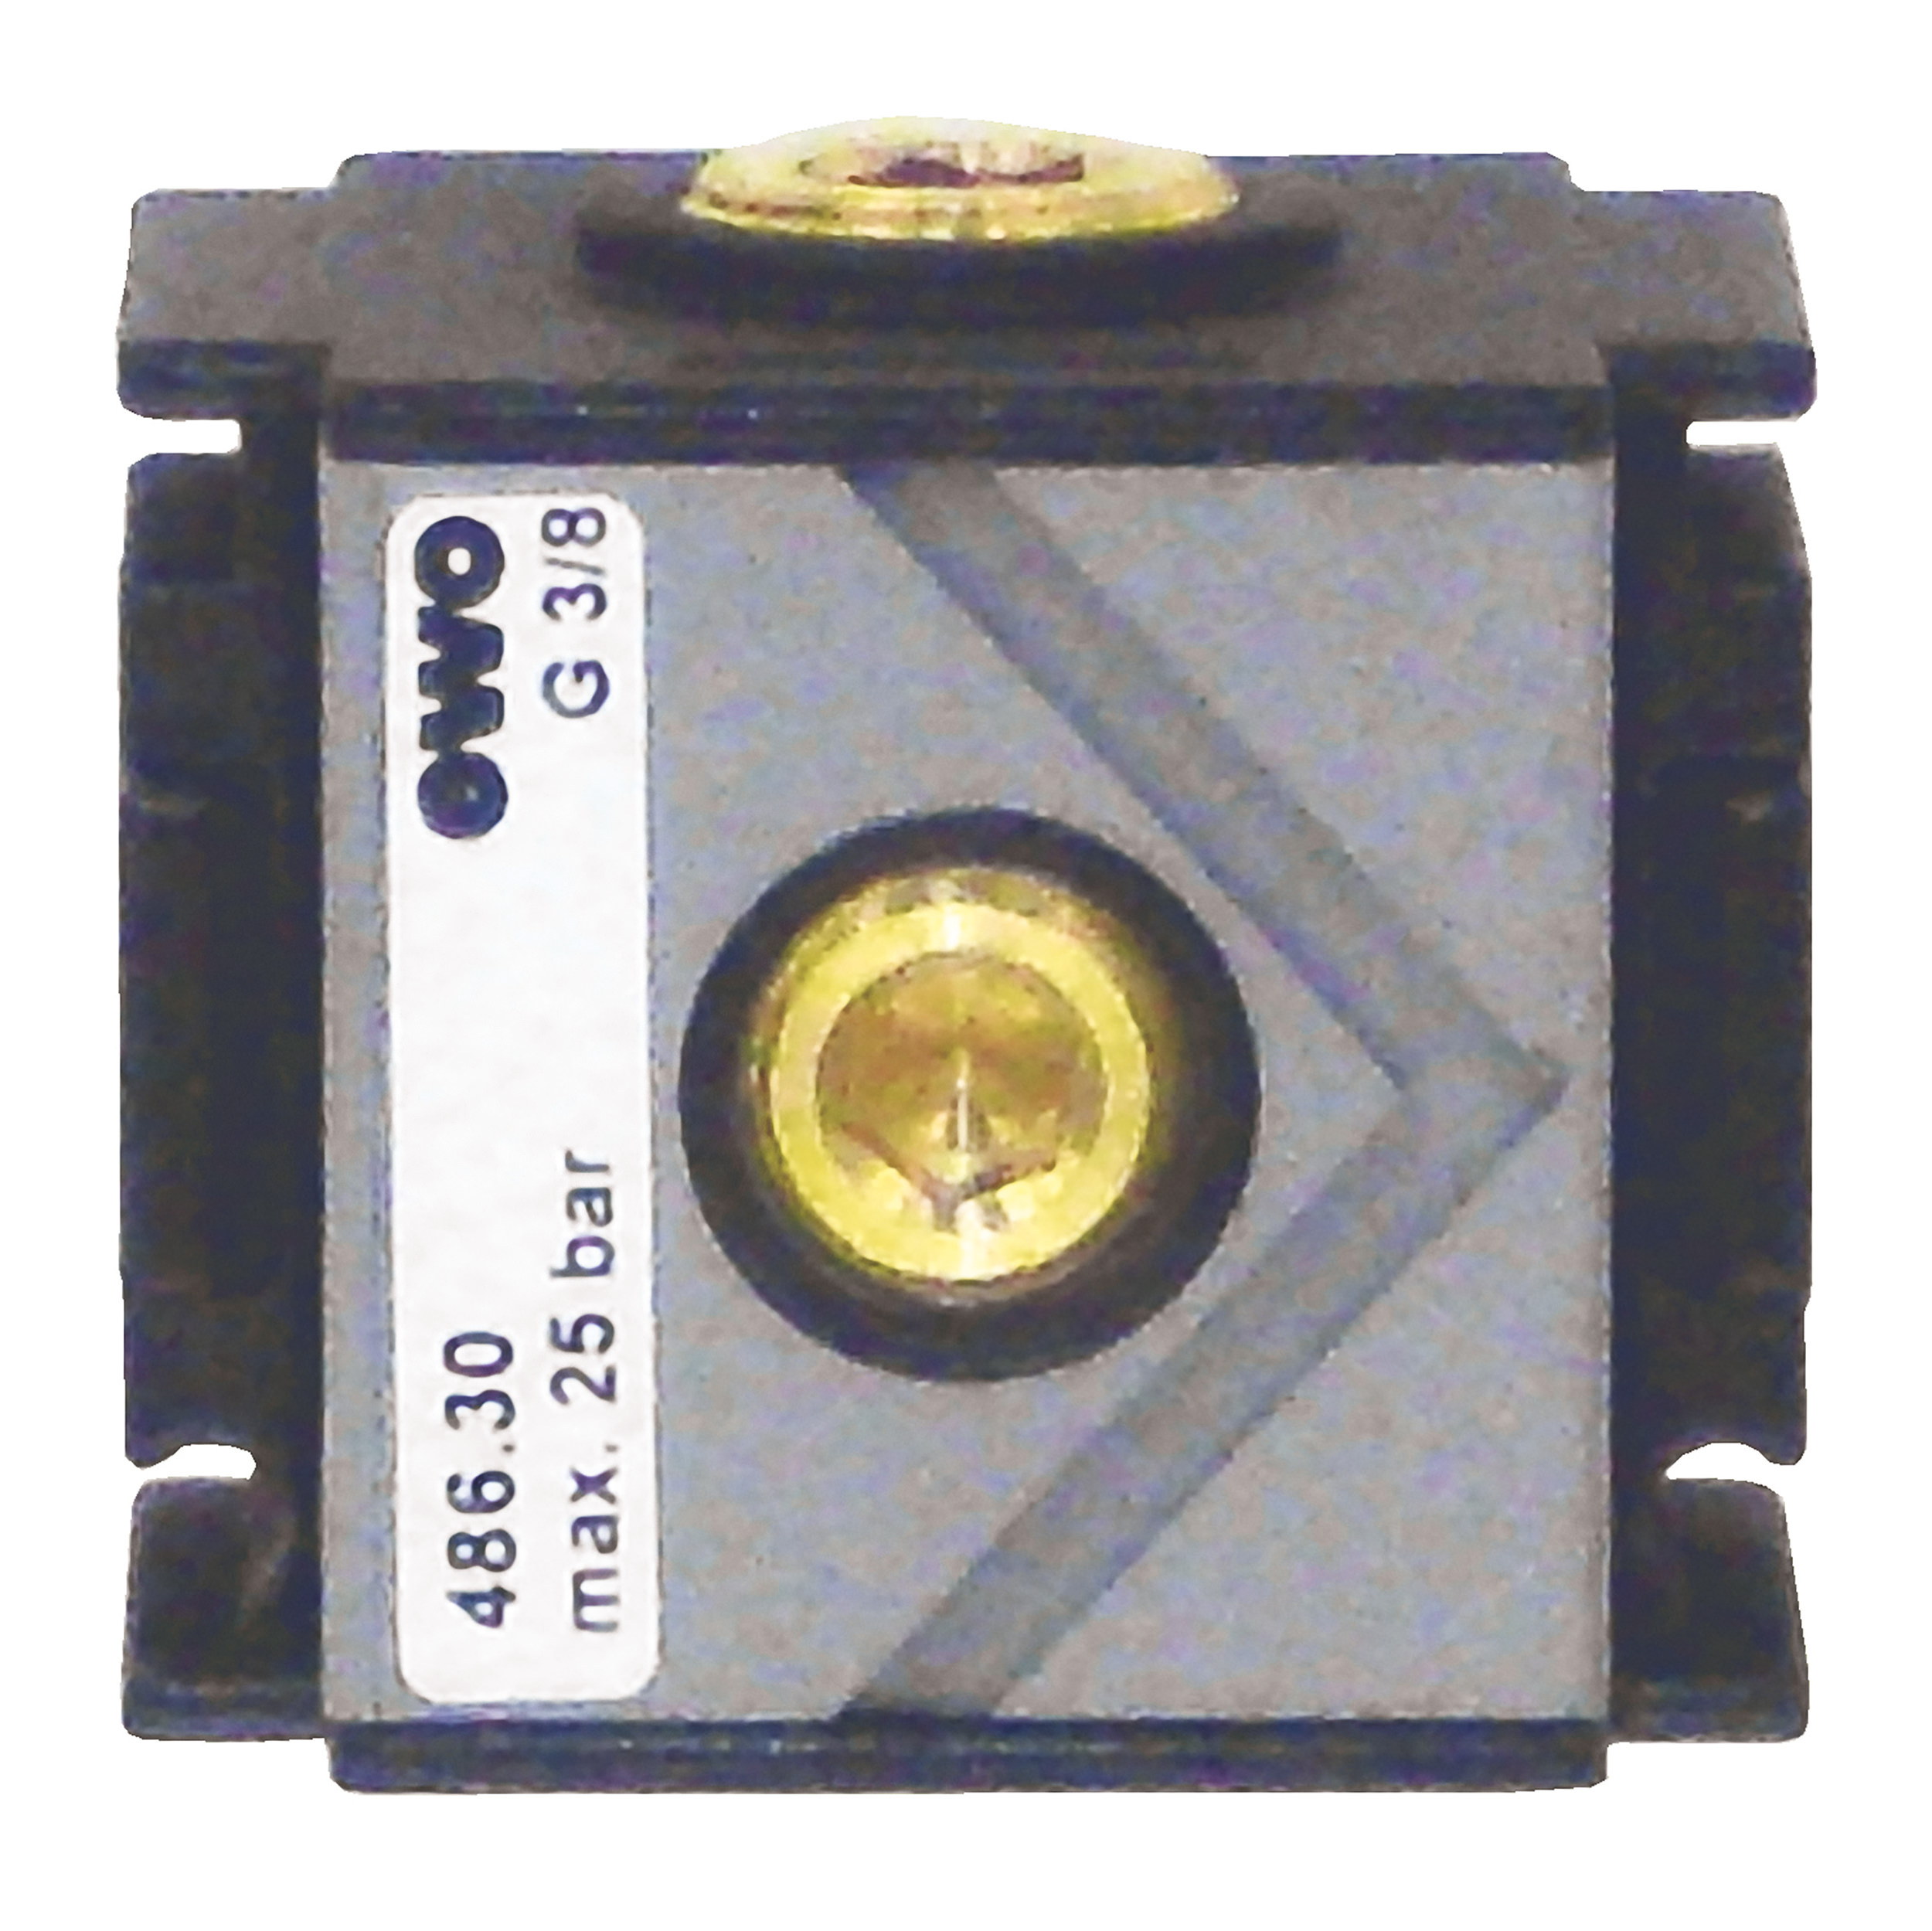 Verteiler Typ 486 variobloc, G⅜, BG 30, Abgänge: oben/unten: G⅜, vorne/hinten: G¼; ohne Rückschlagventil, QN: 5.000 Nl/min